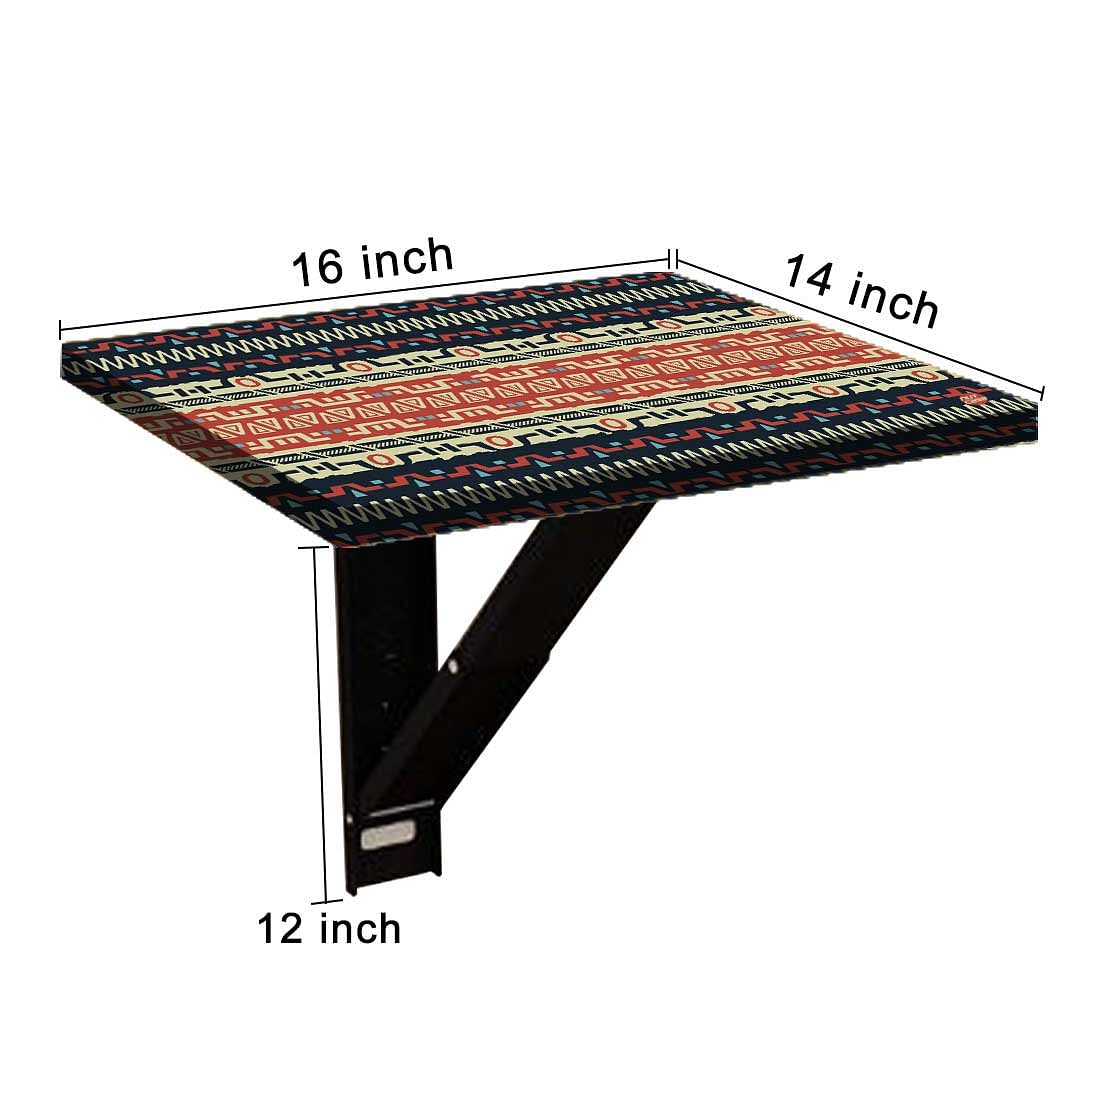 Bedside Table for Bedroom  - Ethnic Design Nutcase